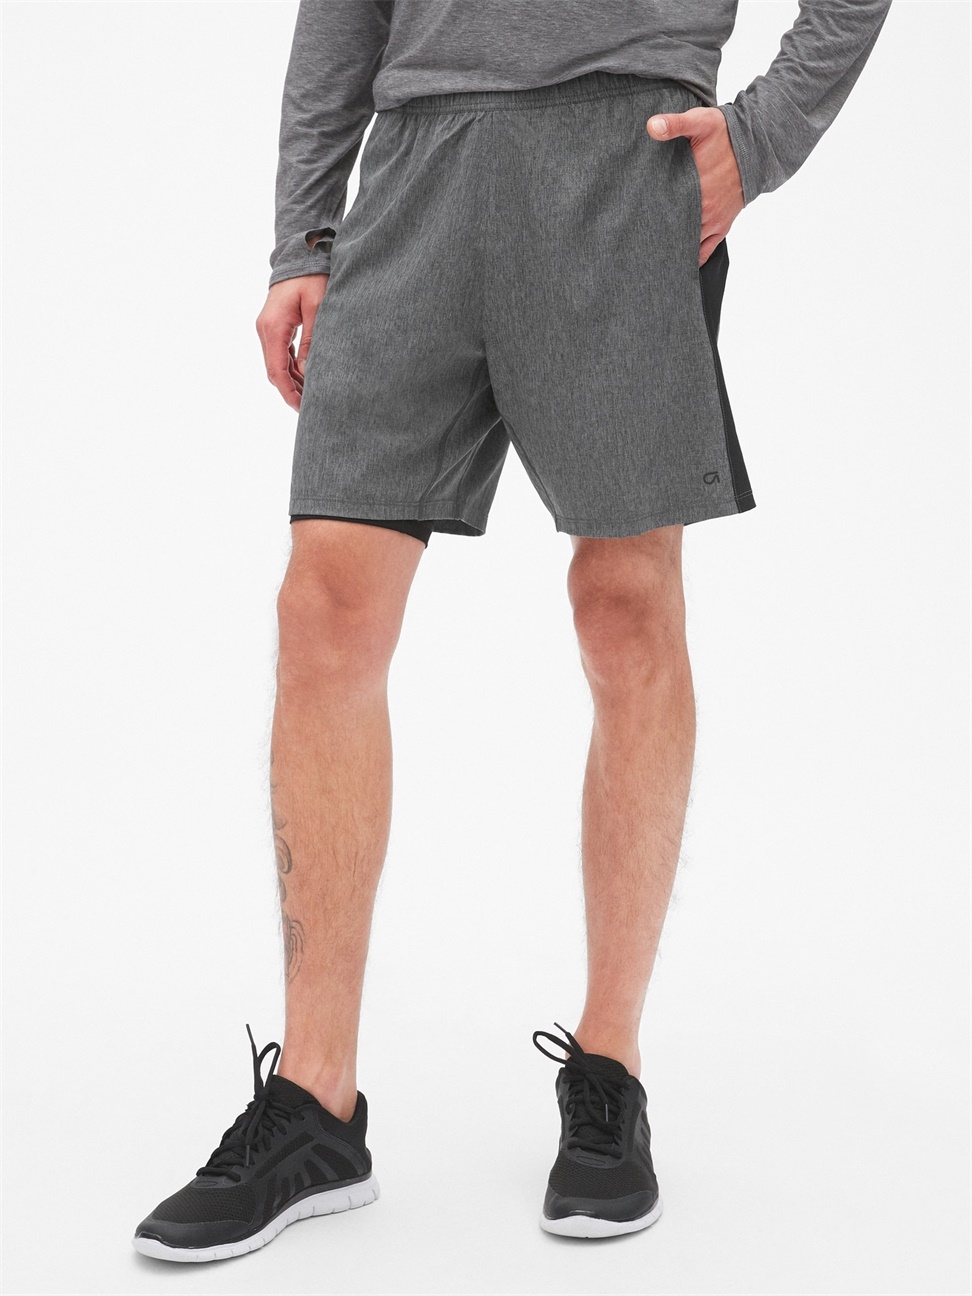 男裝|中腰運動短褲 Gap Fit運動系列-中度混合灰